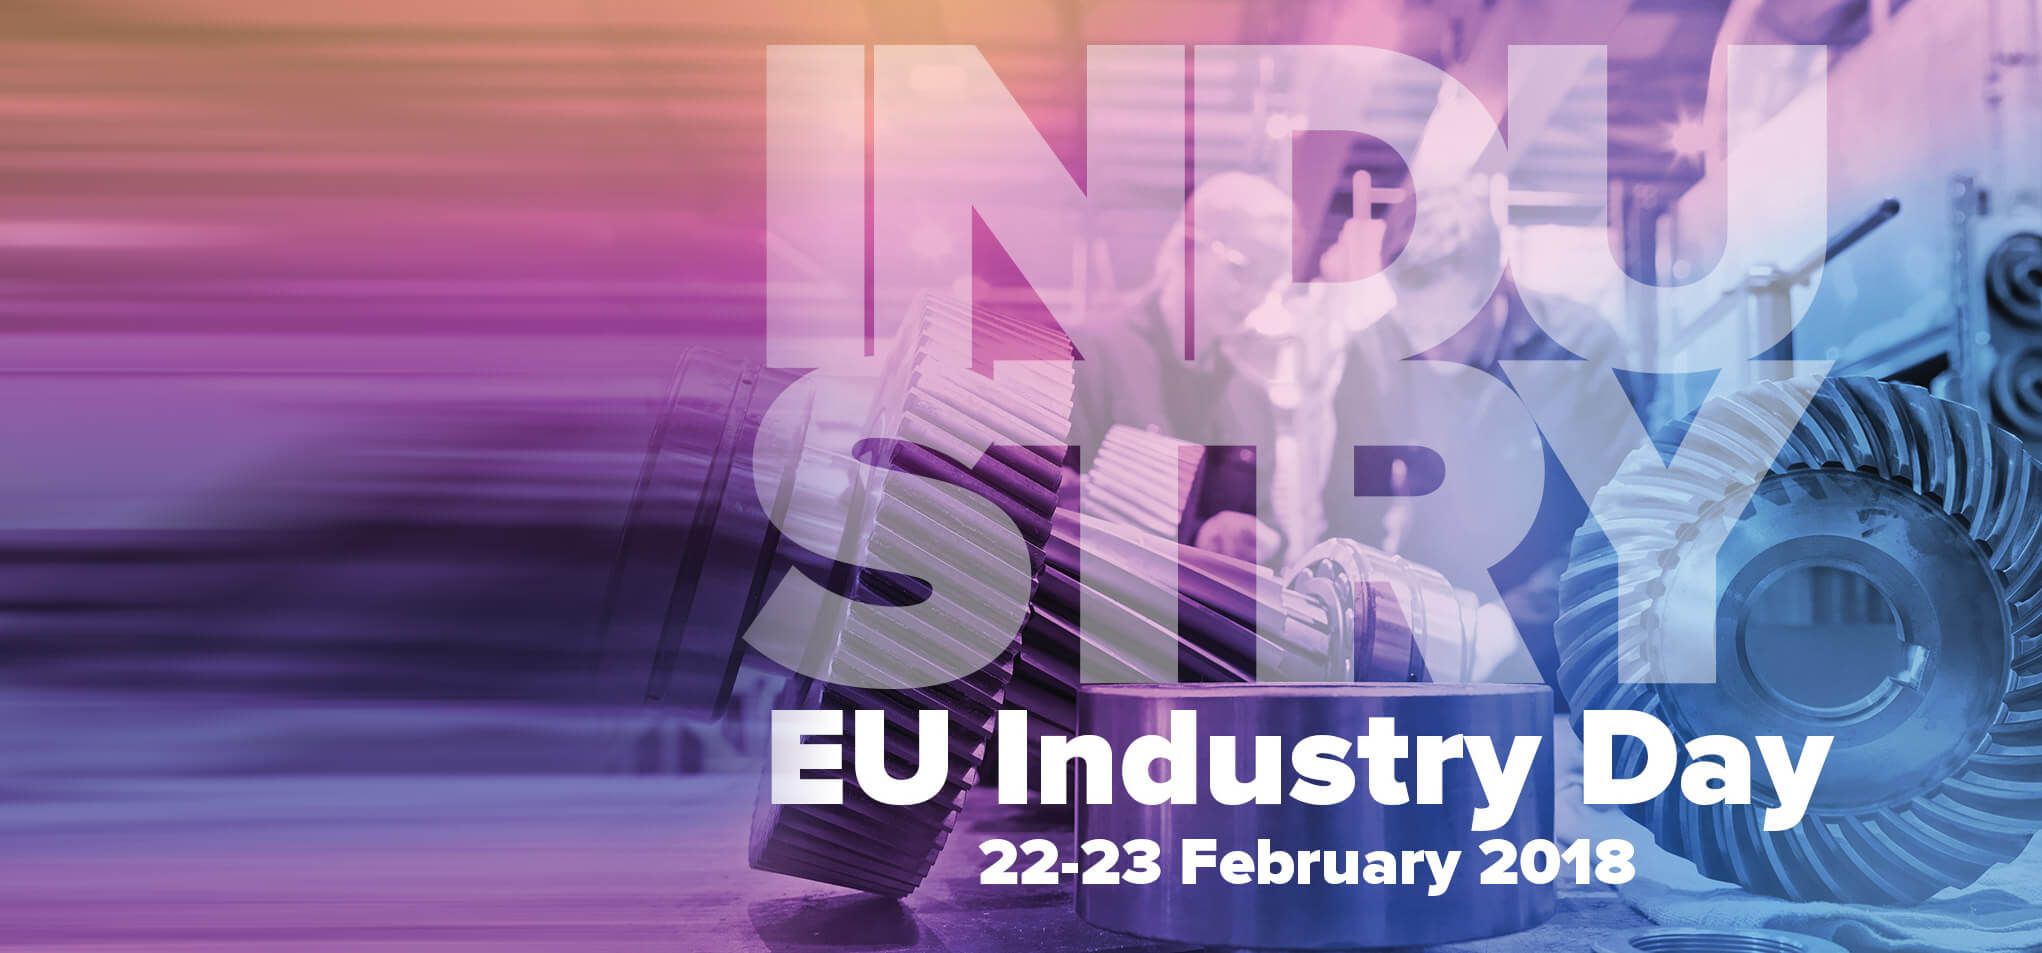 EU Industry Day 2018 Taavi Madiberk Skeleton Technologies